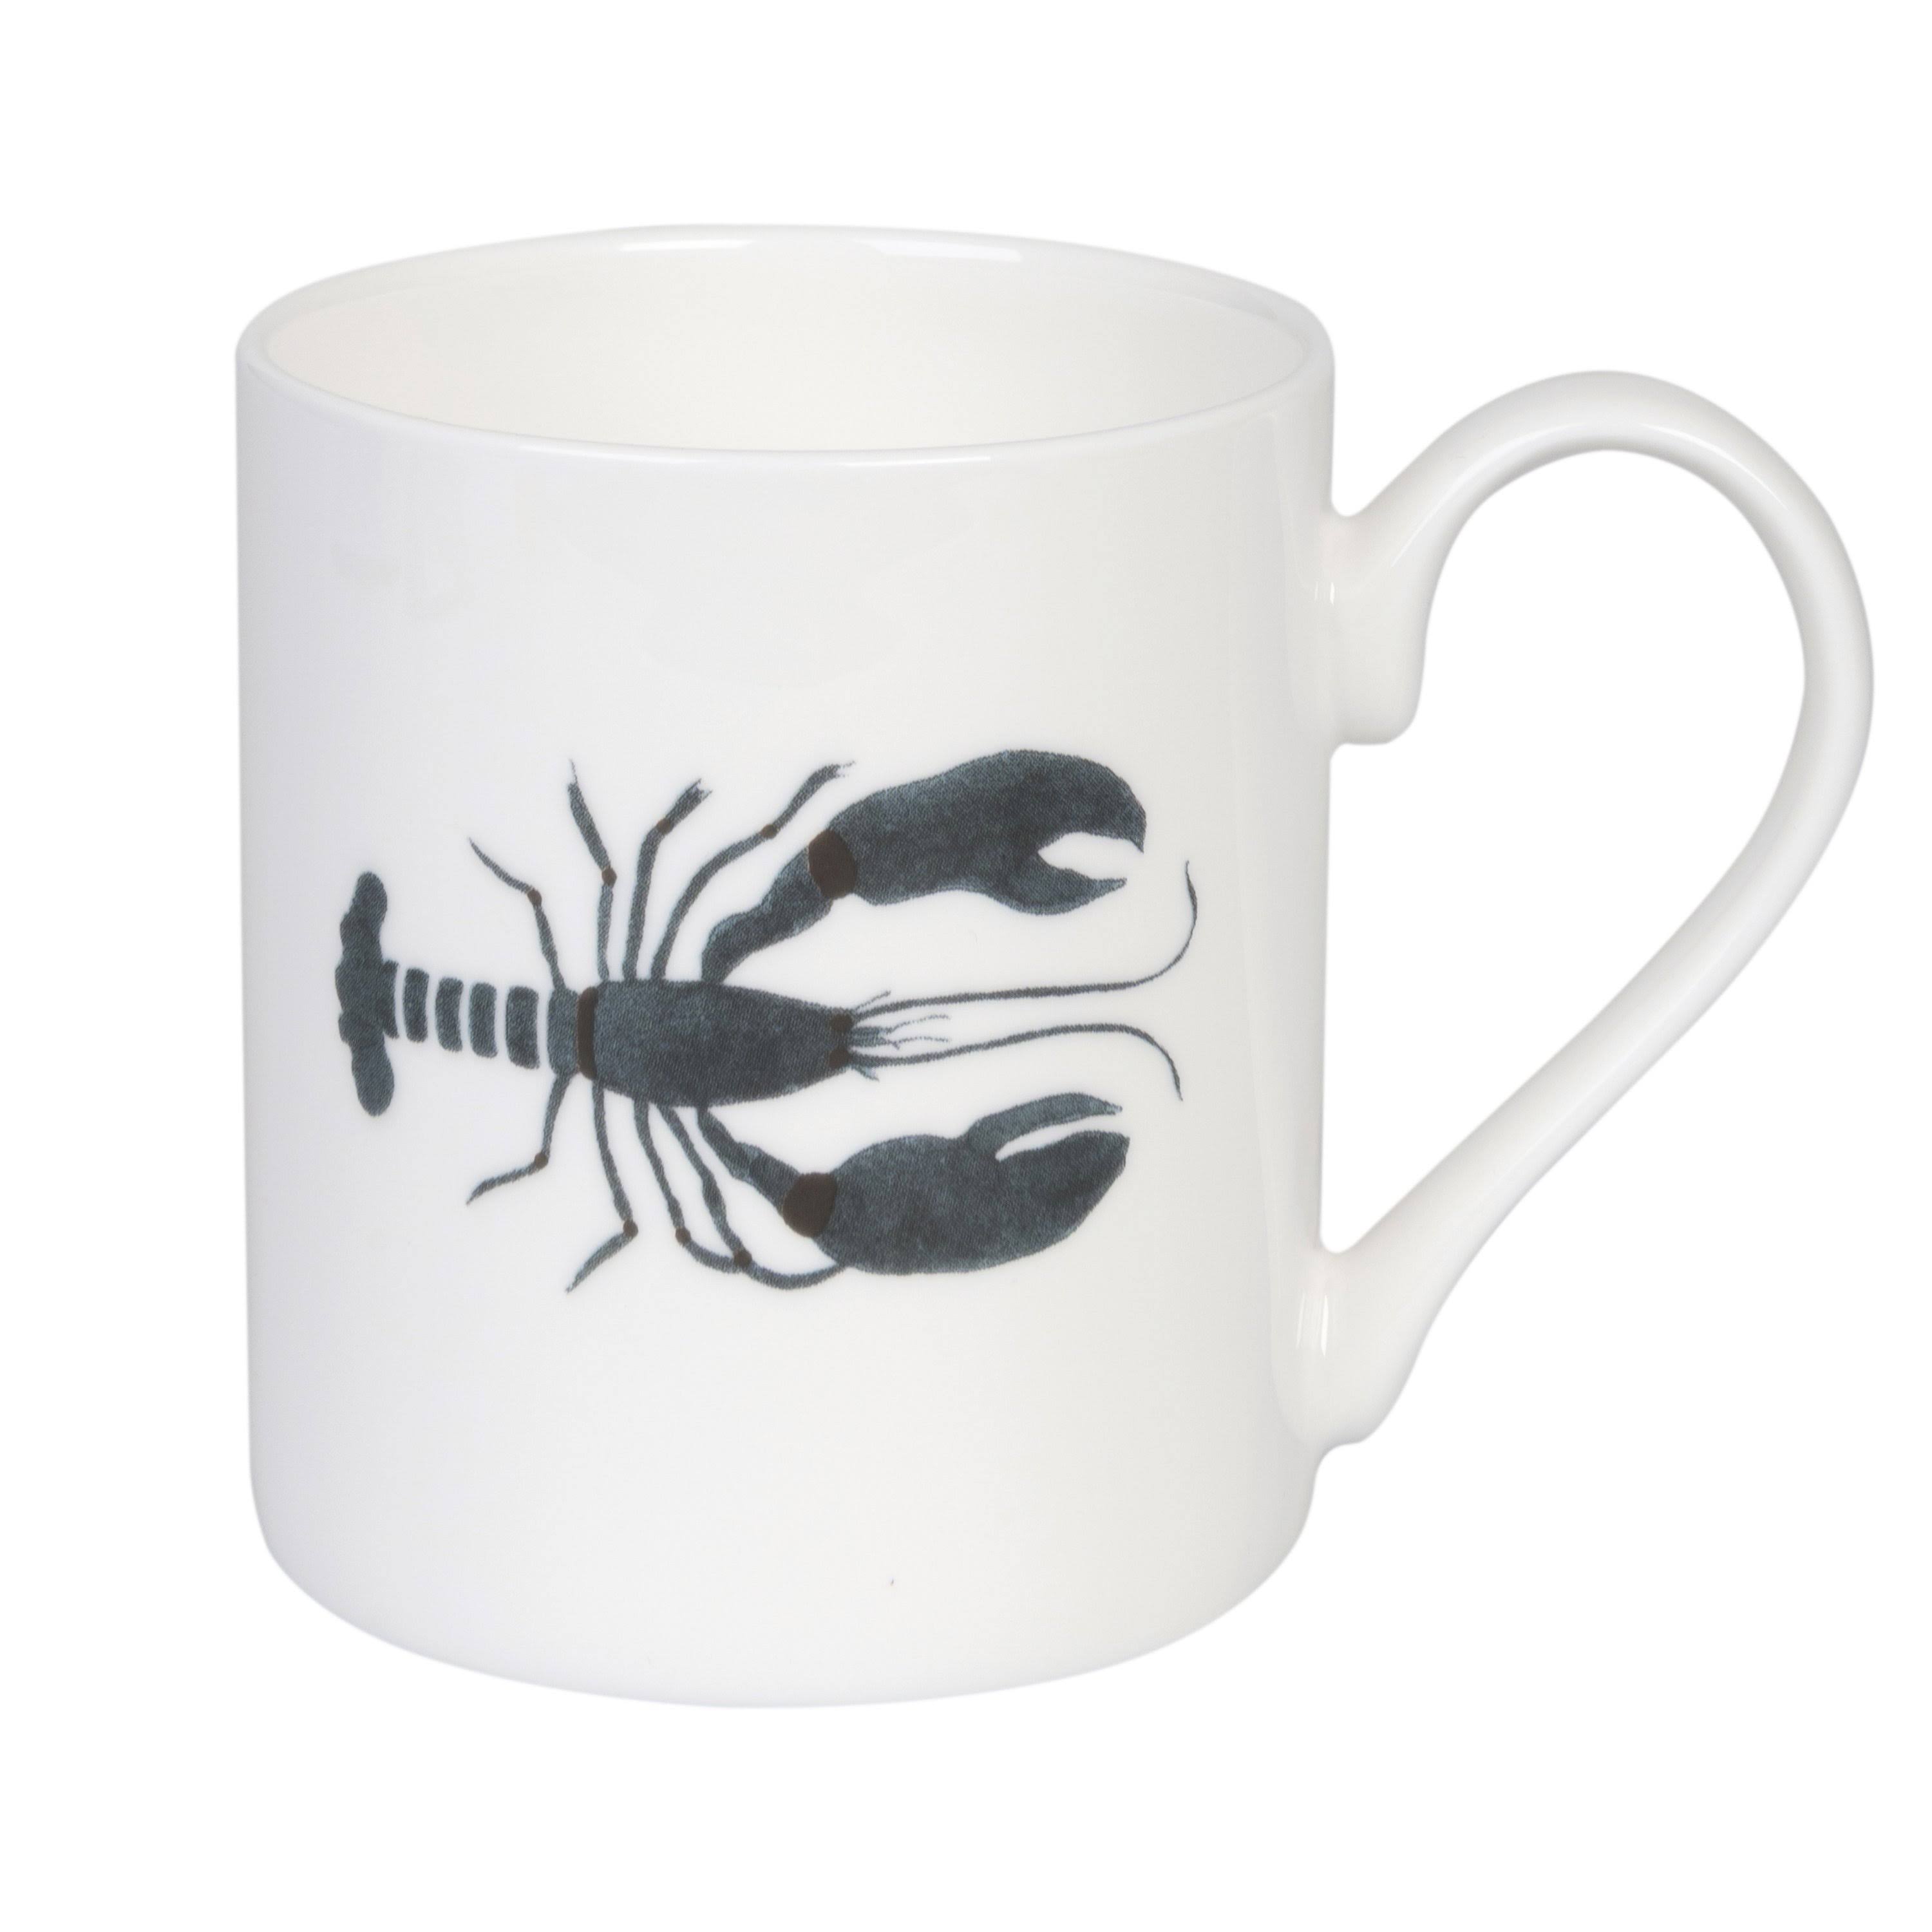 Sophie Allport Lobster Mug Standard Solo Mug